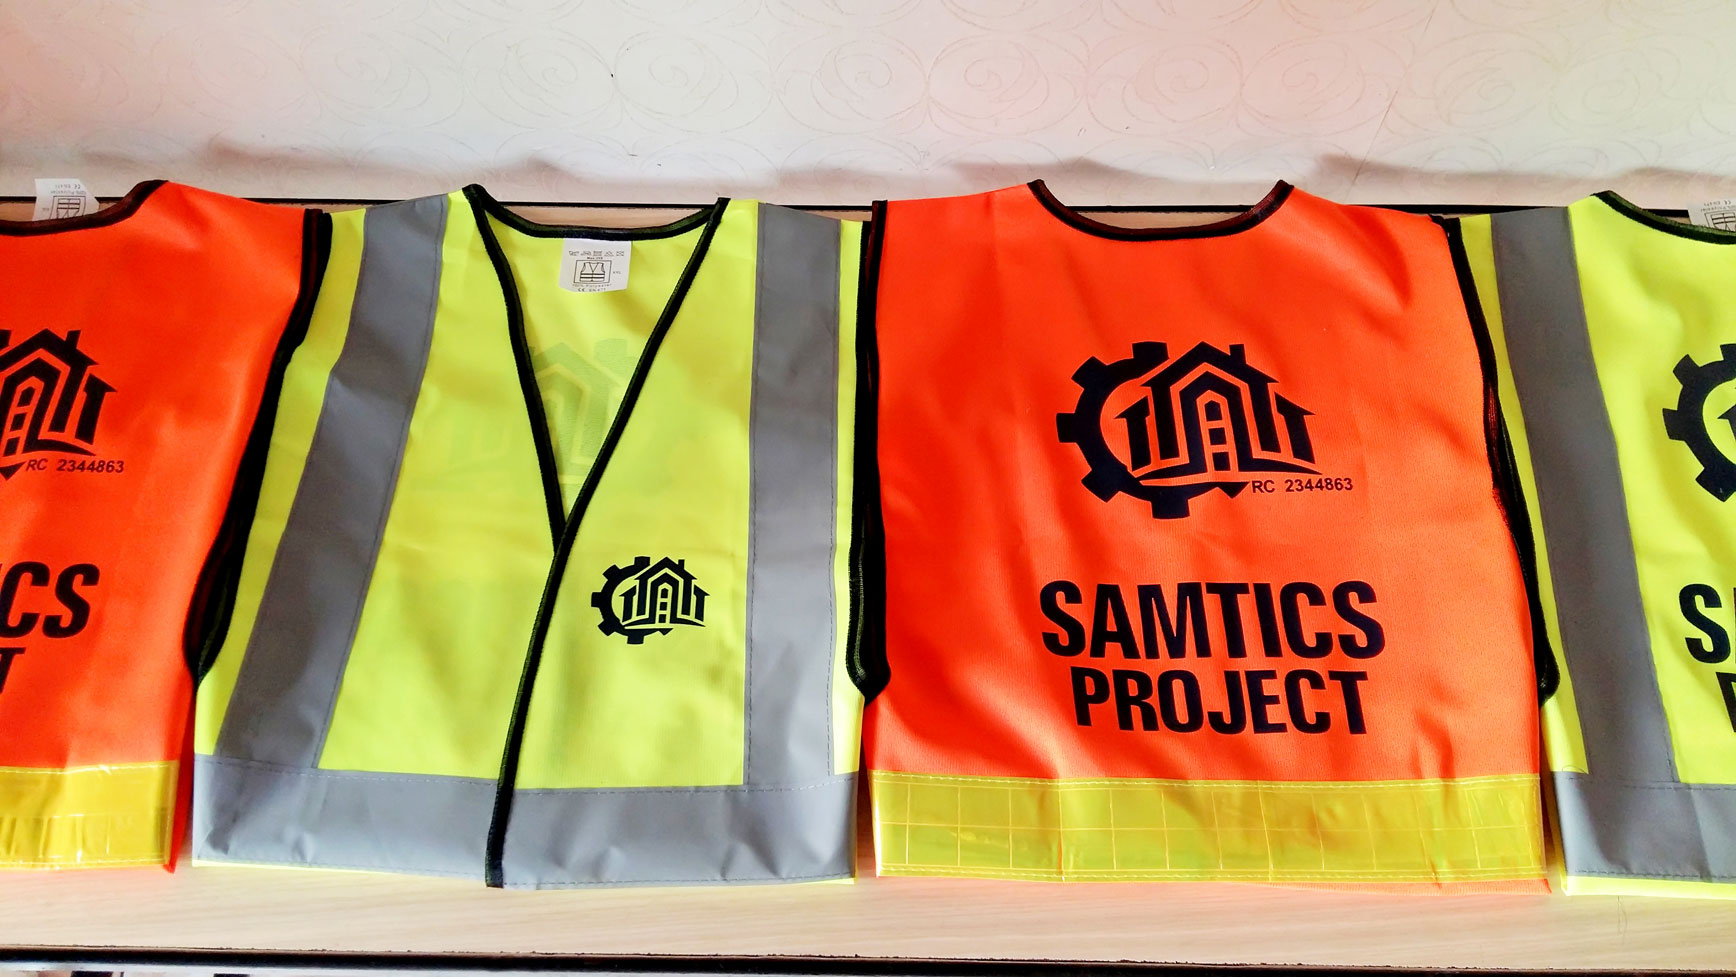 samtics project safety vest